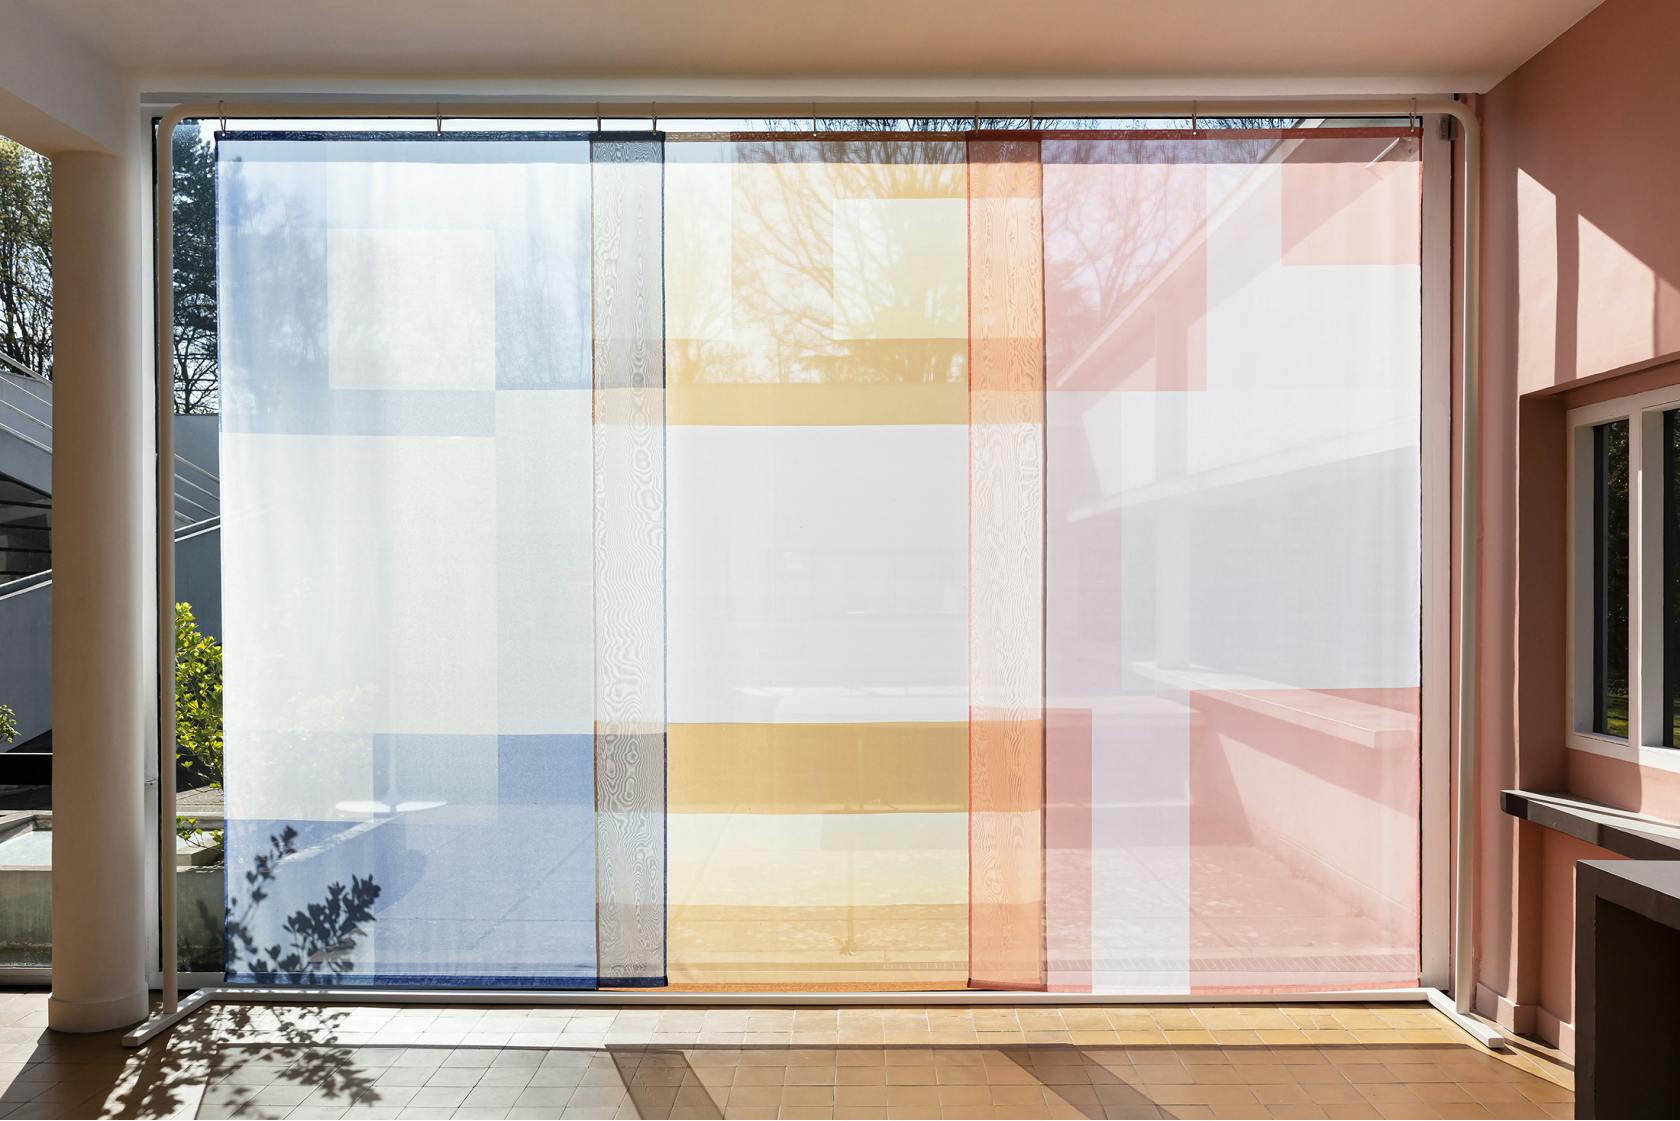 Japanese Panels ⎮ 2x4.30 m coated steel, printed muslin